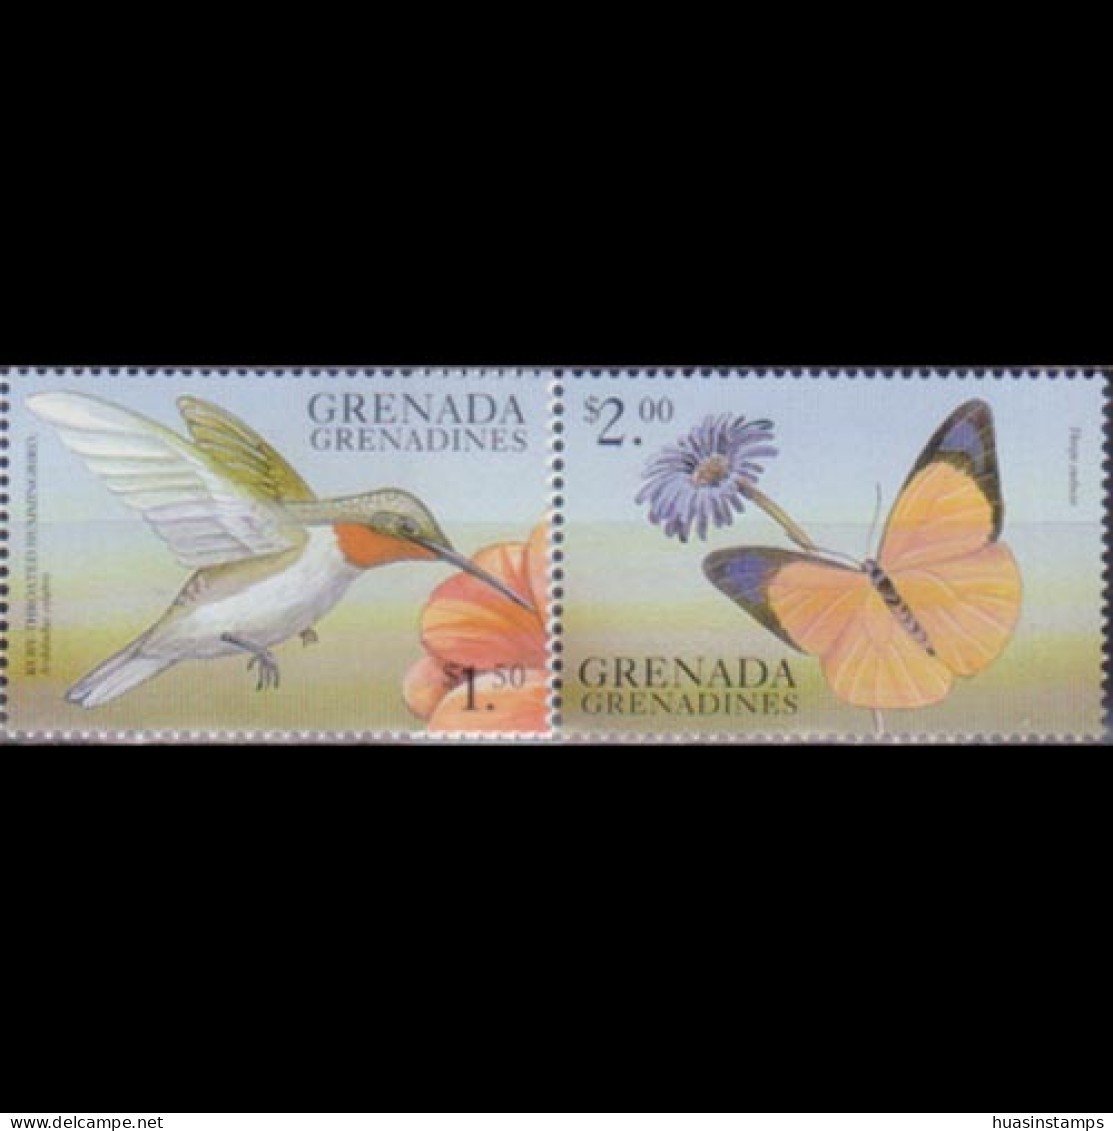 GRENADA GRENADINES 1999 - #2096-7 Bird/Butterfly $1.5-2 MNH - Grenade (1974-...)